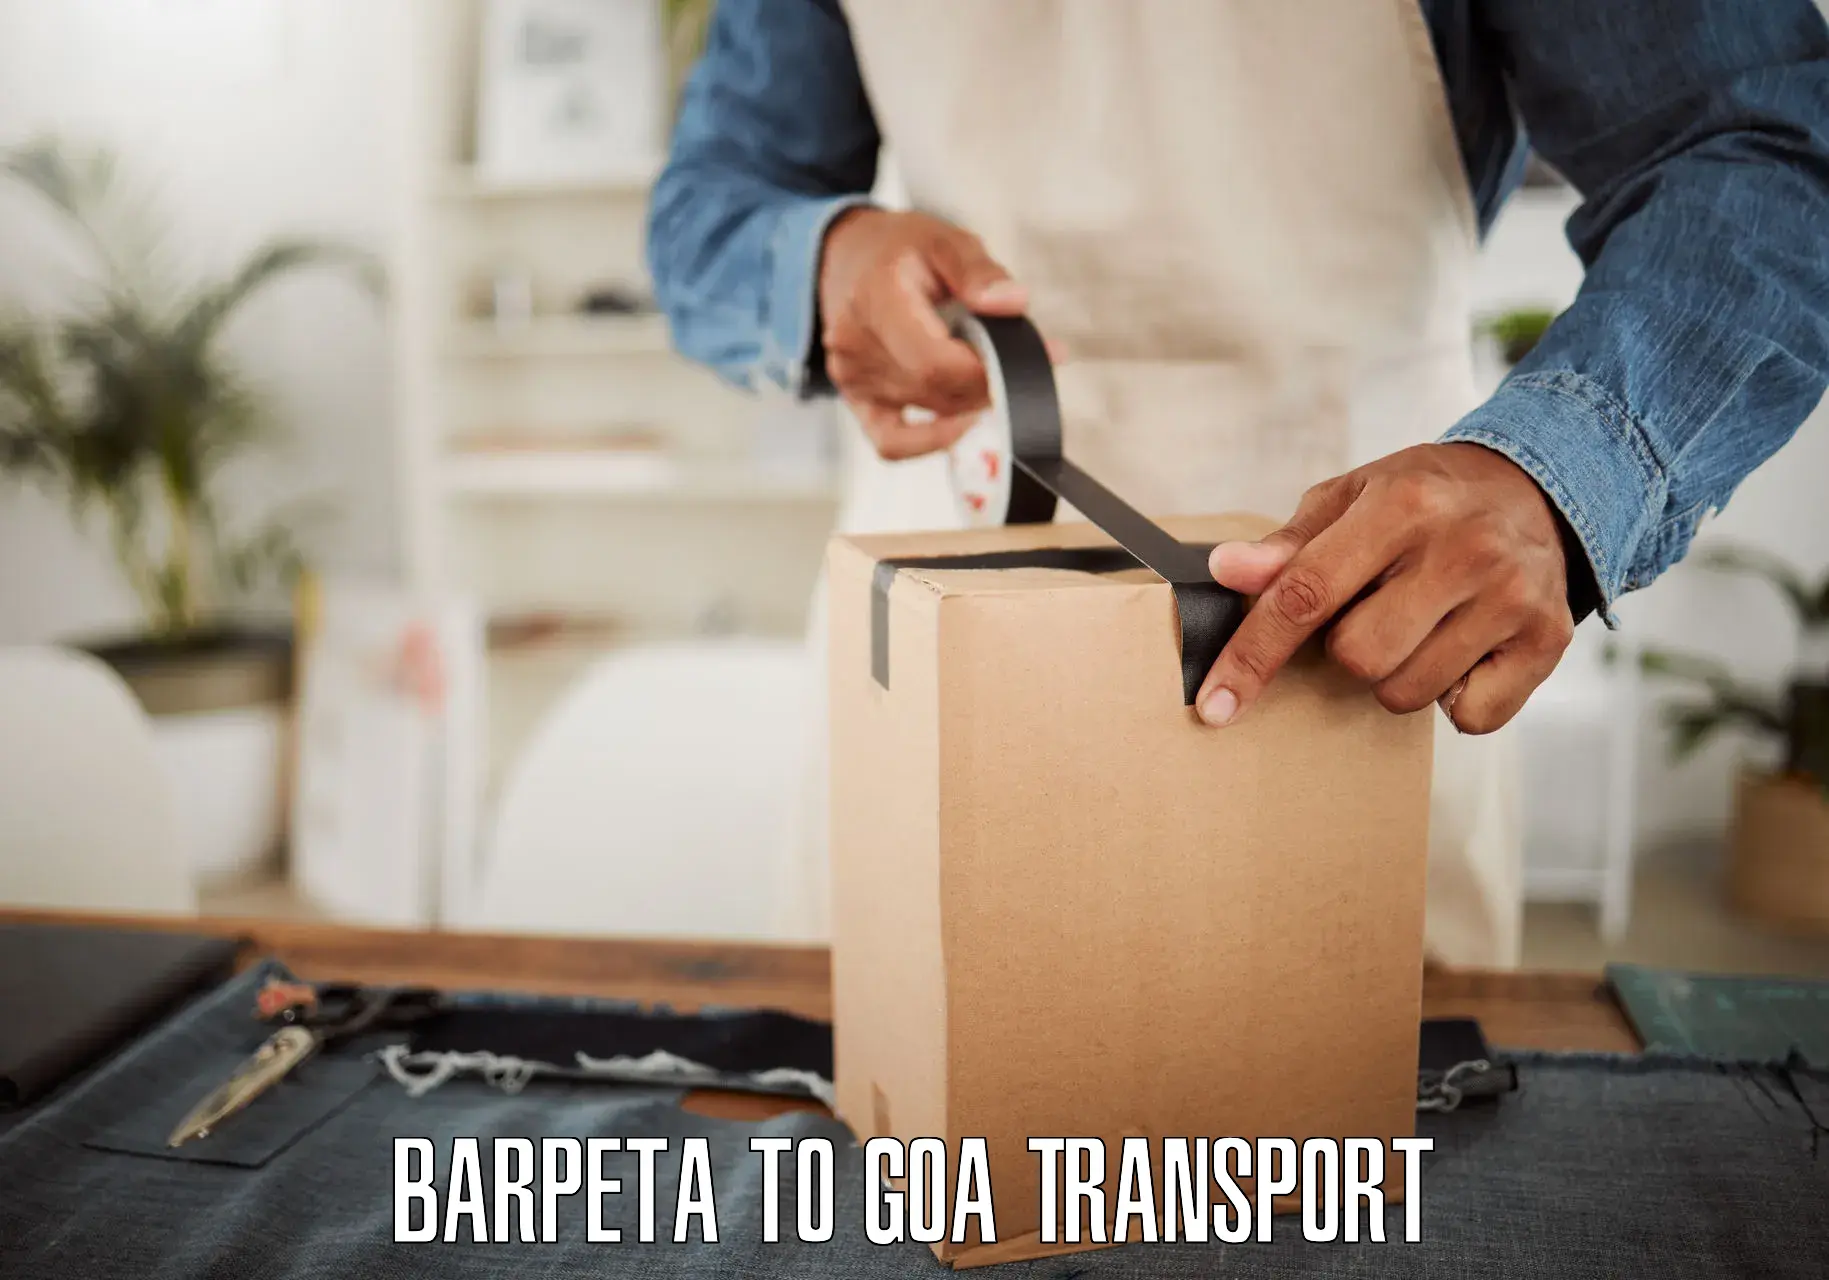 Two wheeler parcel service Barpeta to Goa